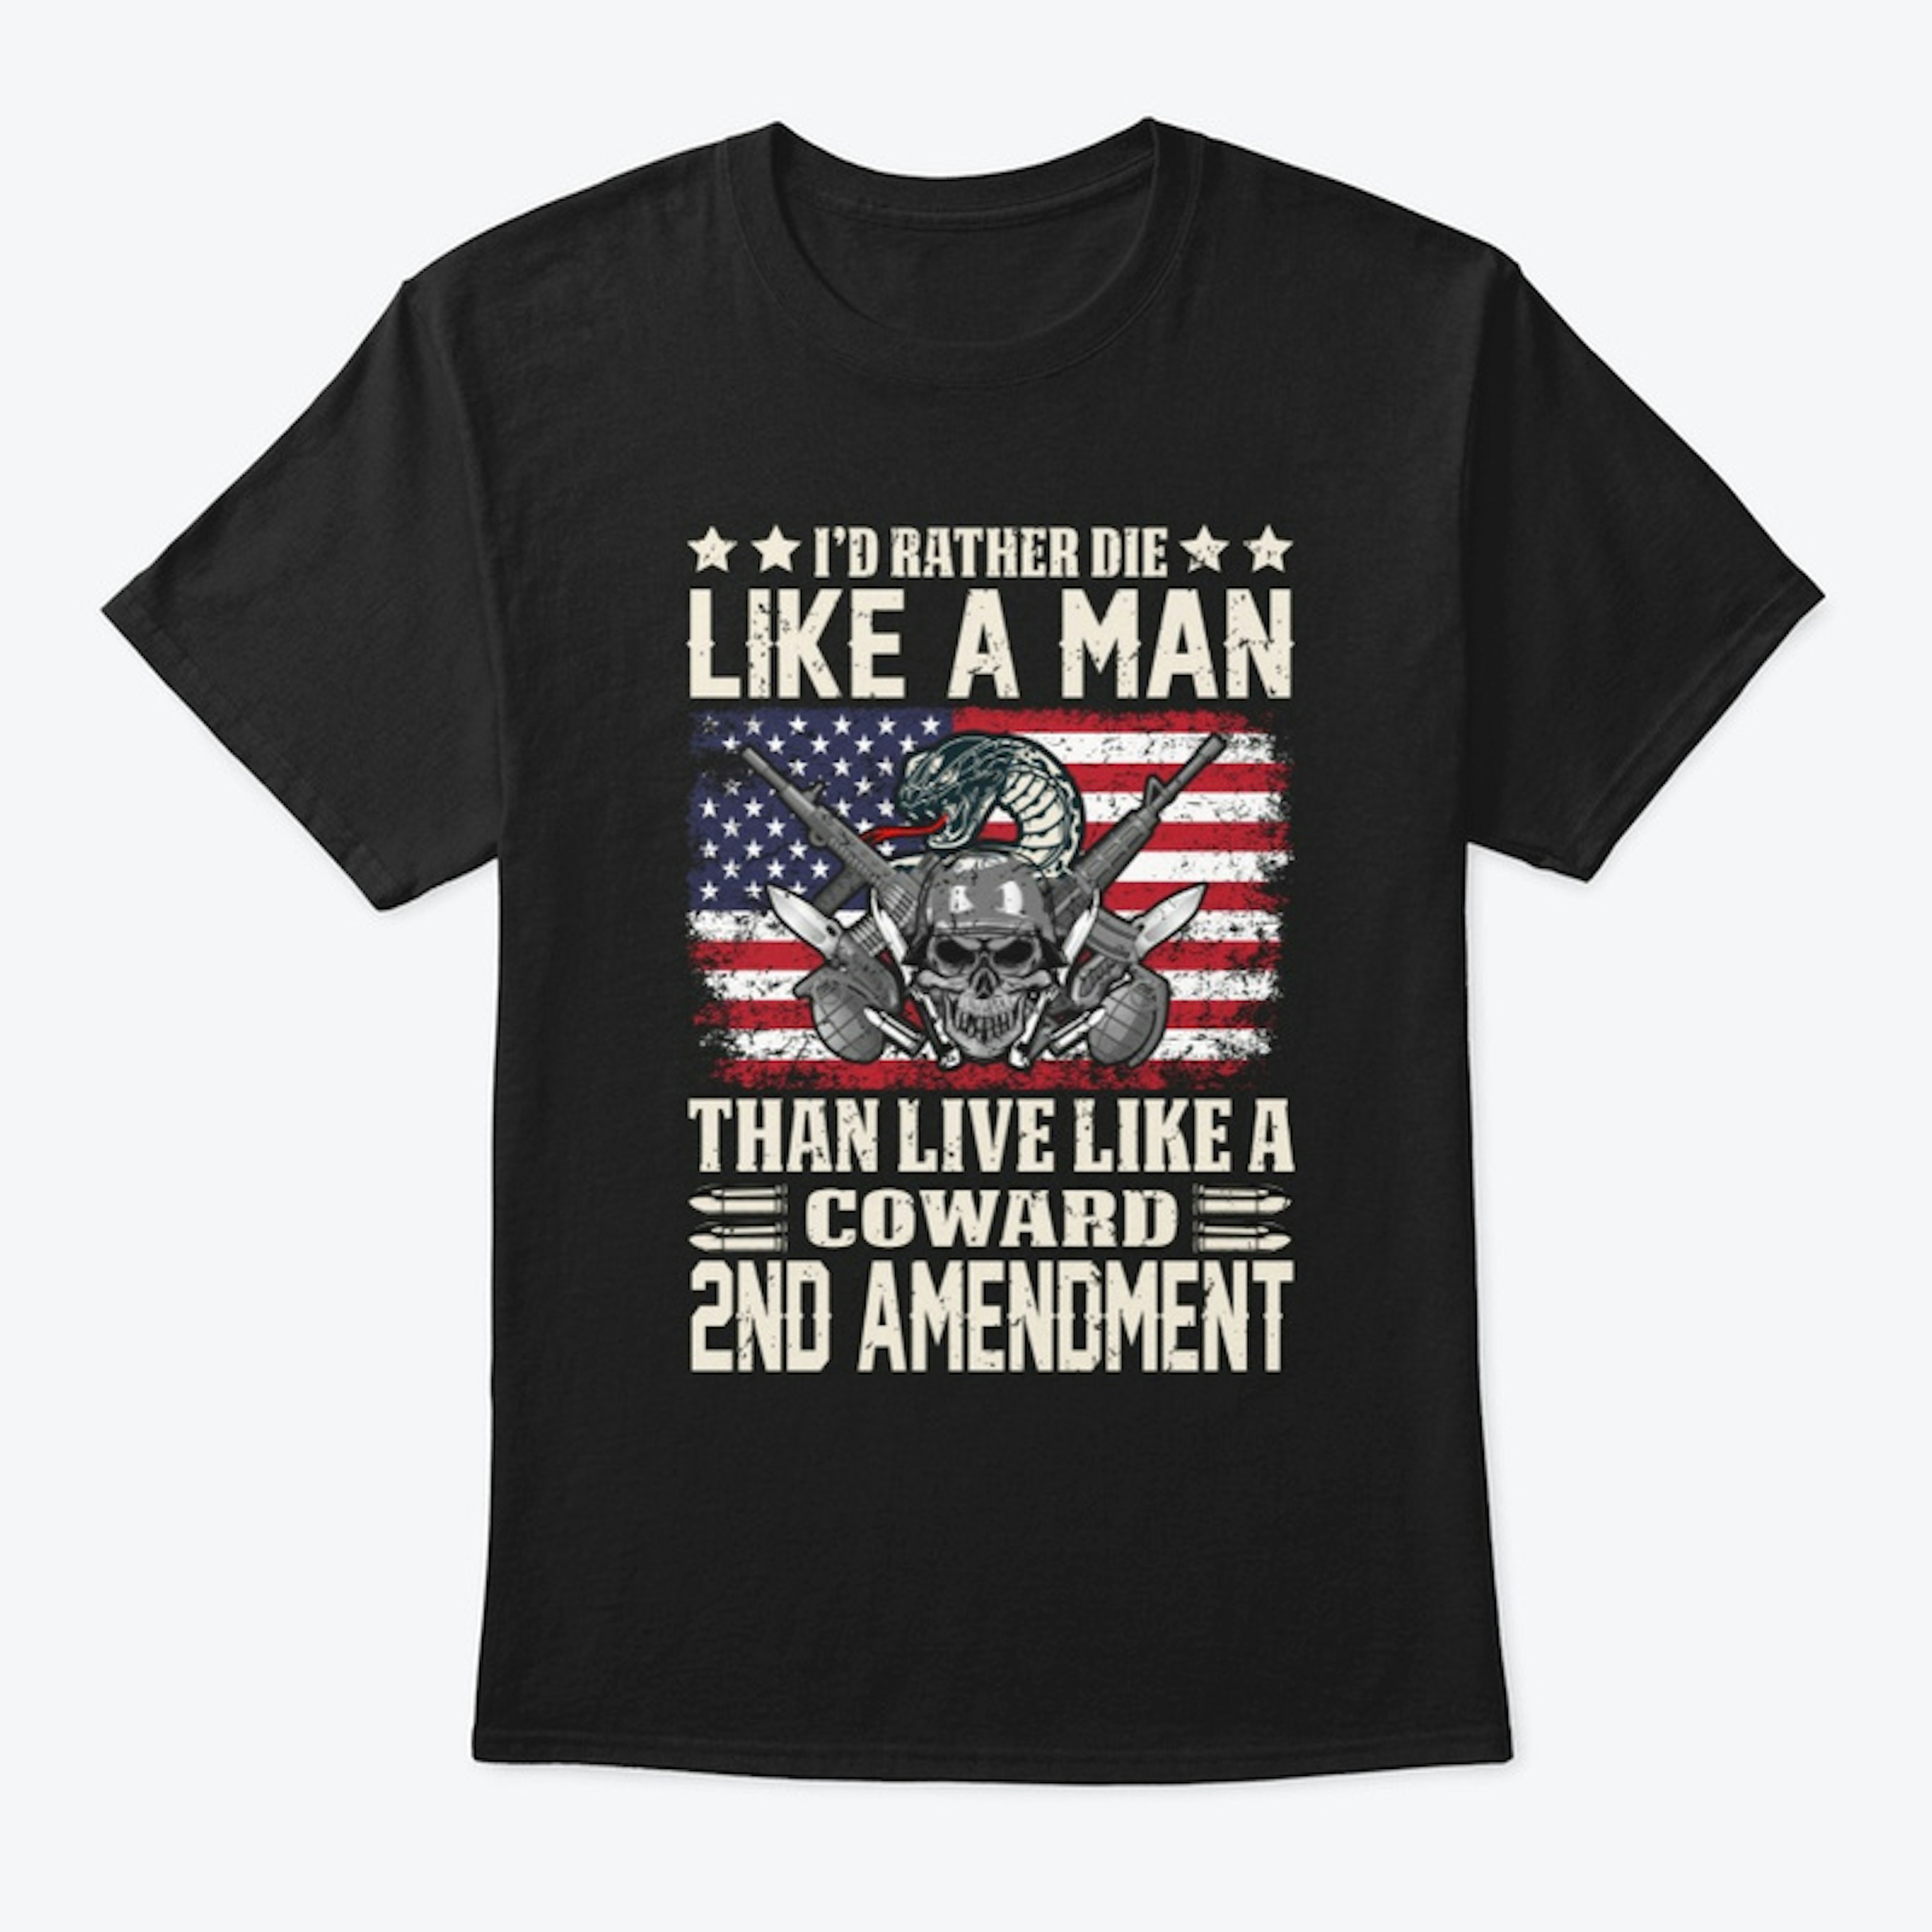 2nd Amendment T-Shirt Design